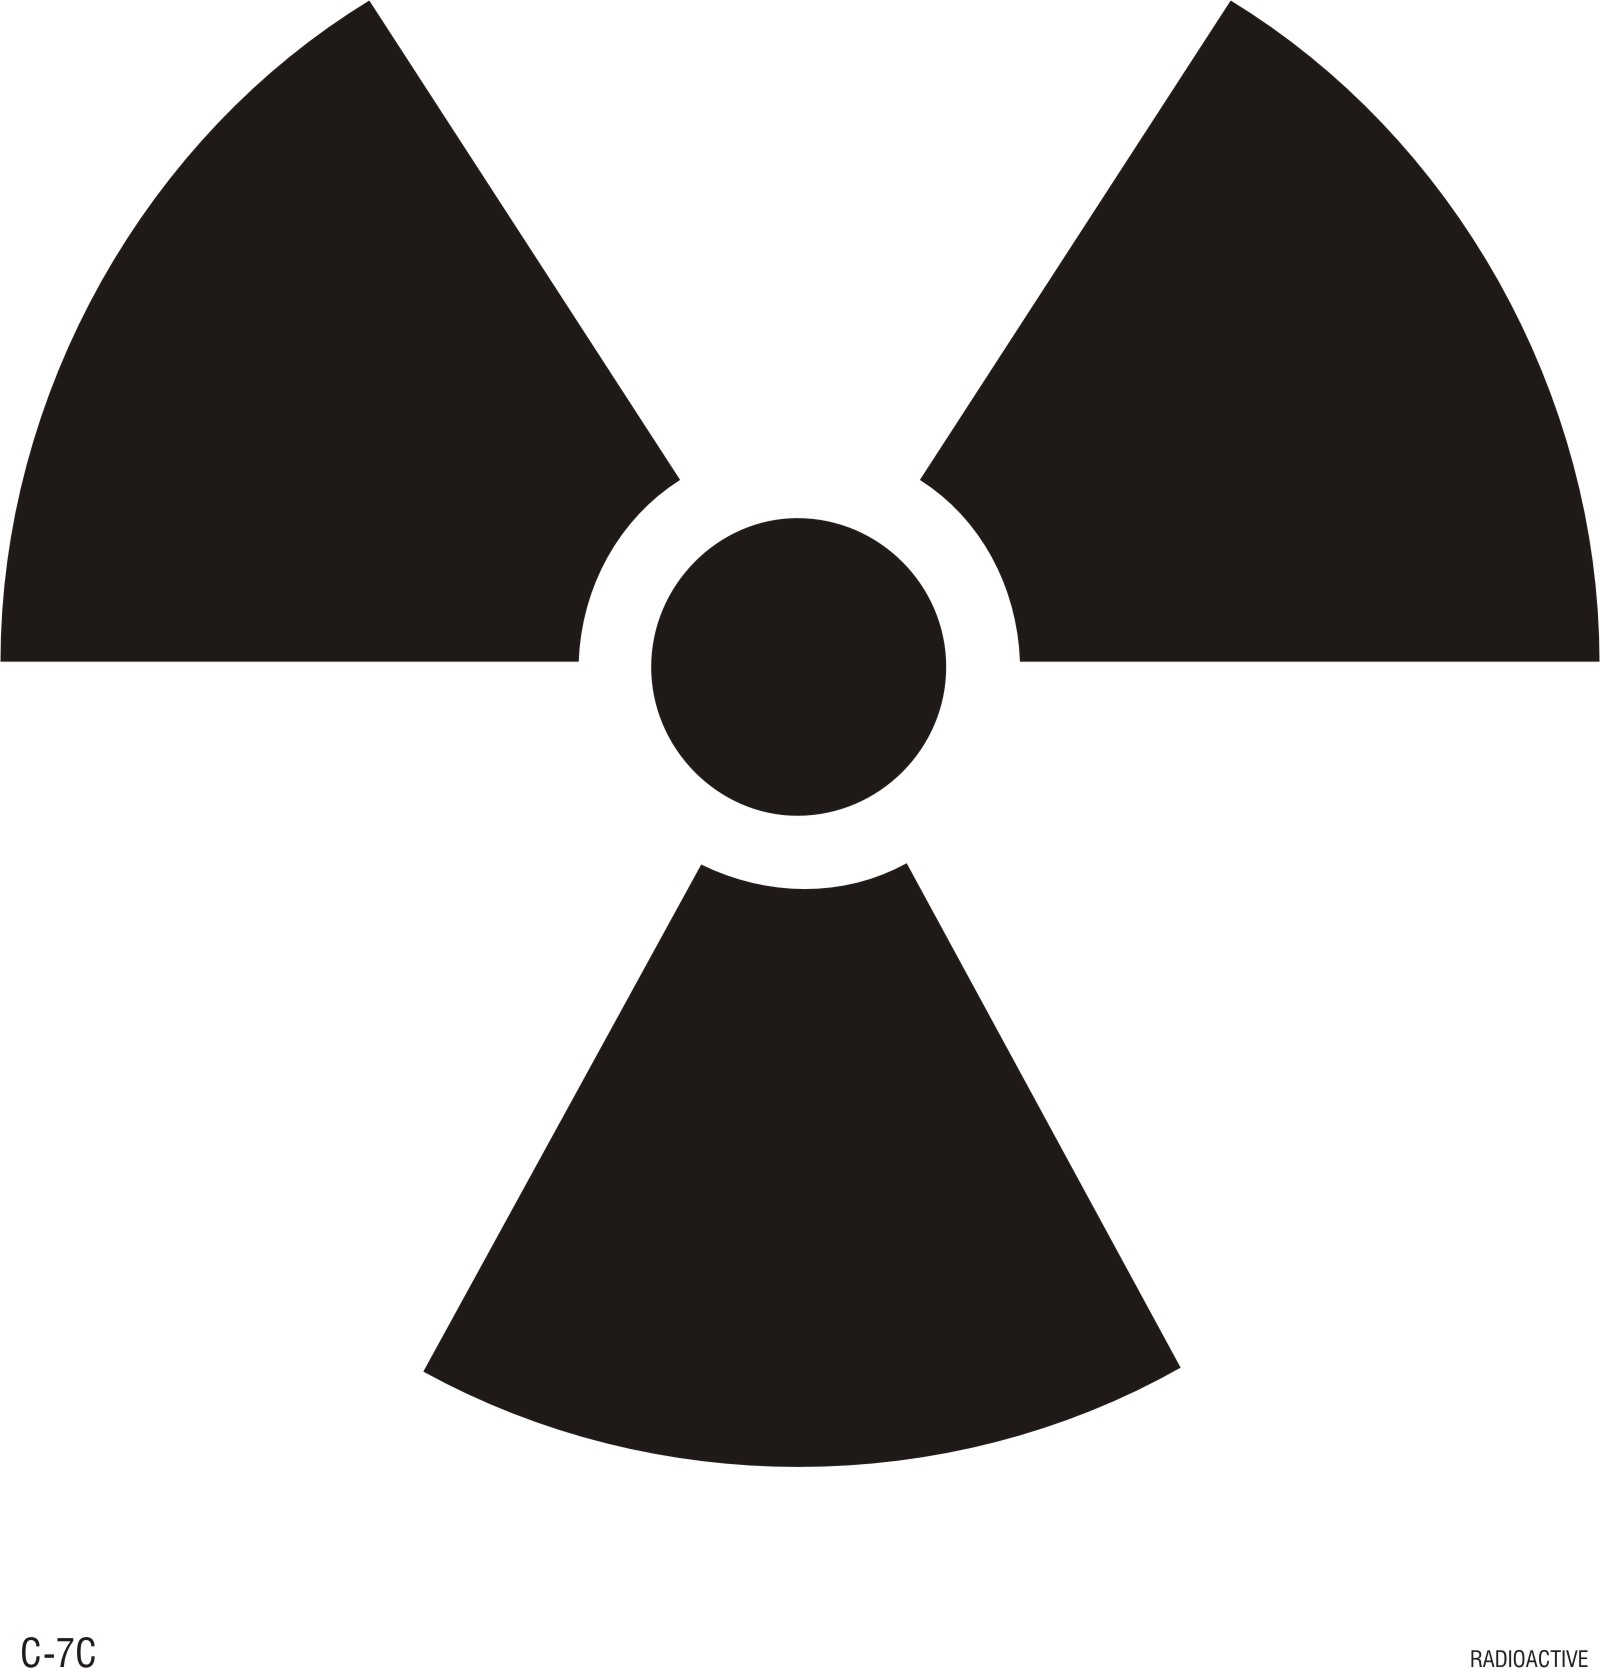 Radioactive Signs